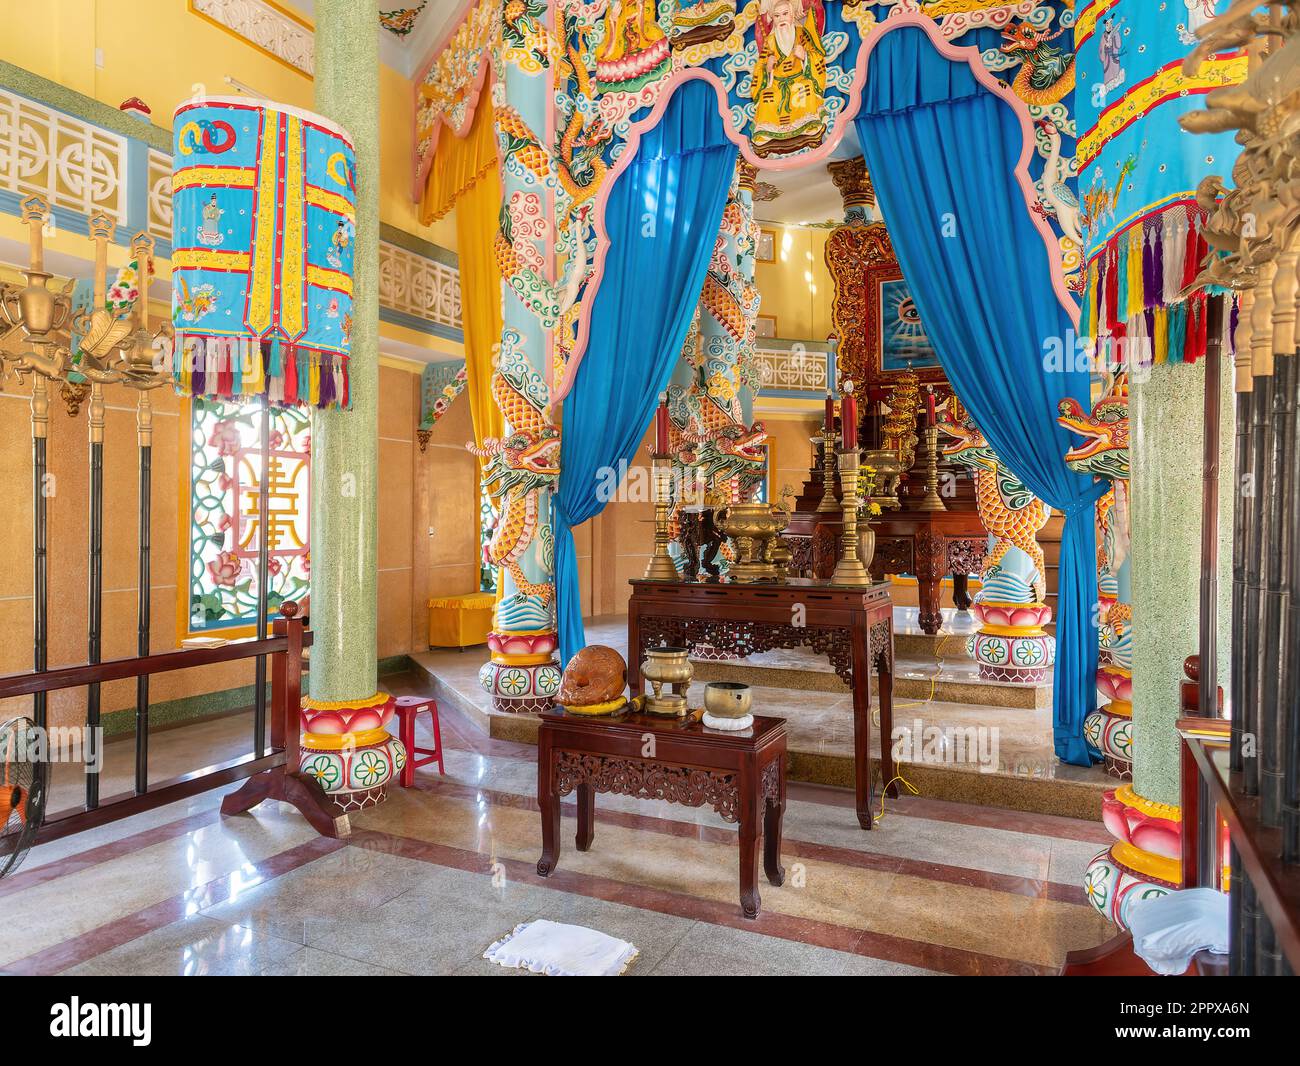 Intérieur du temple CAO Dai à Hoi an, province de Quang Nam, Vietnam. CAO Dai est une religion syncrétique monothéiste qui retient de nombreux Vietnamiens Banque D'Images